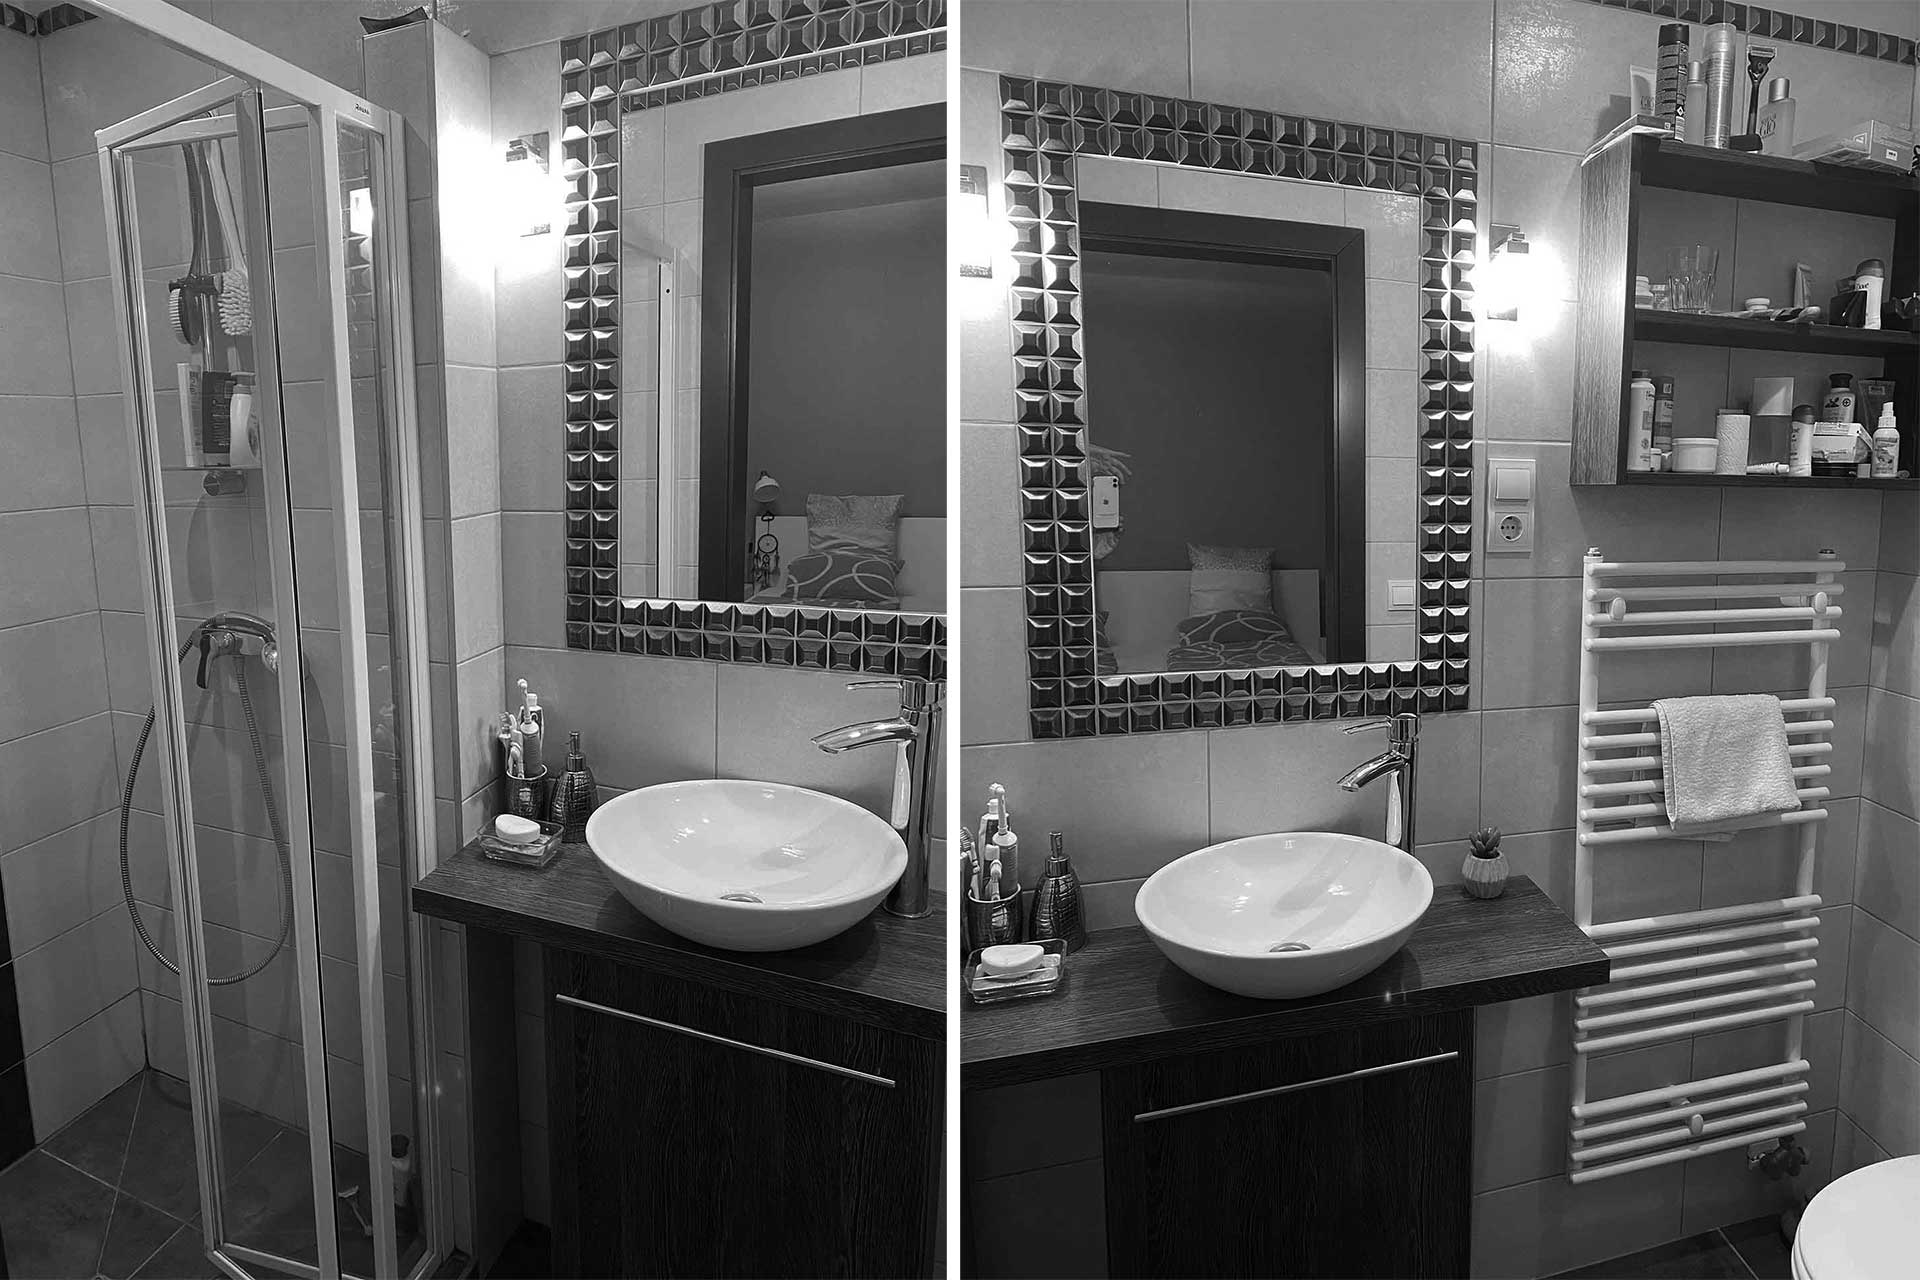 A képen, a panorámás lakóház egyik modern fürdőszobája látható.